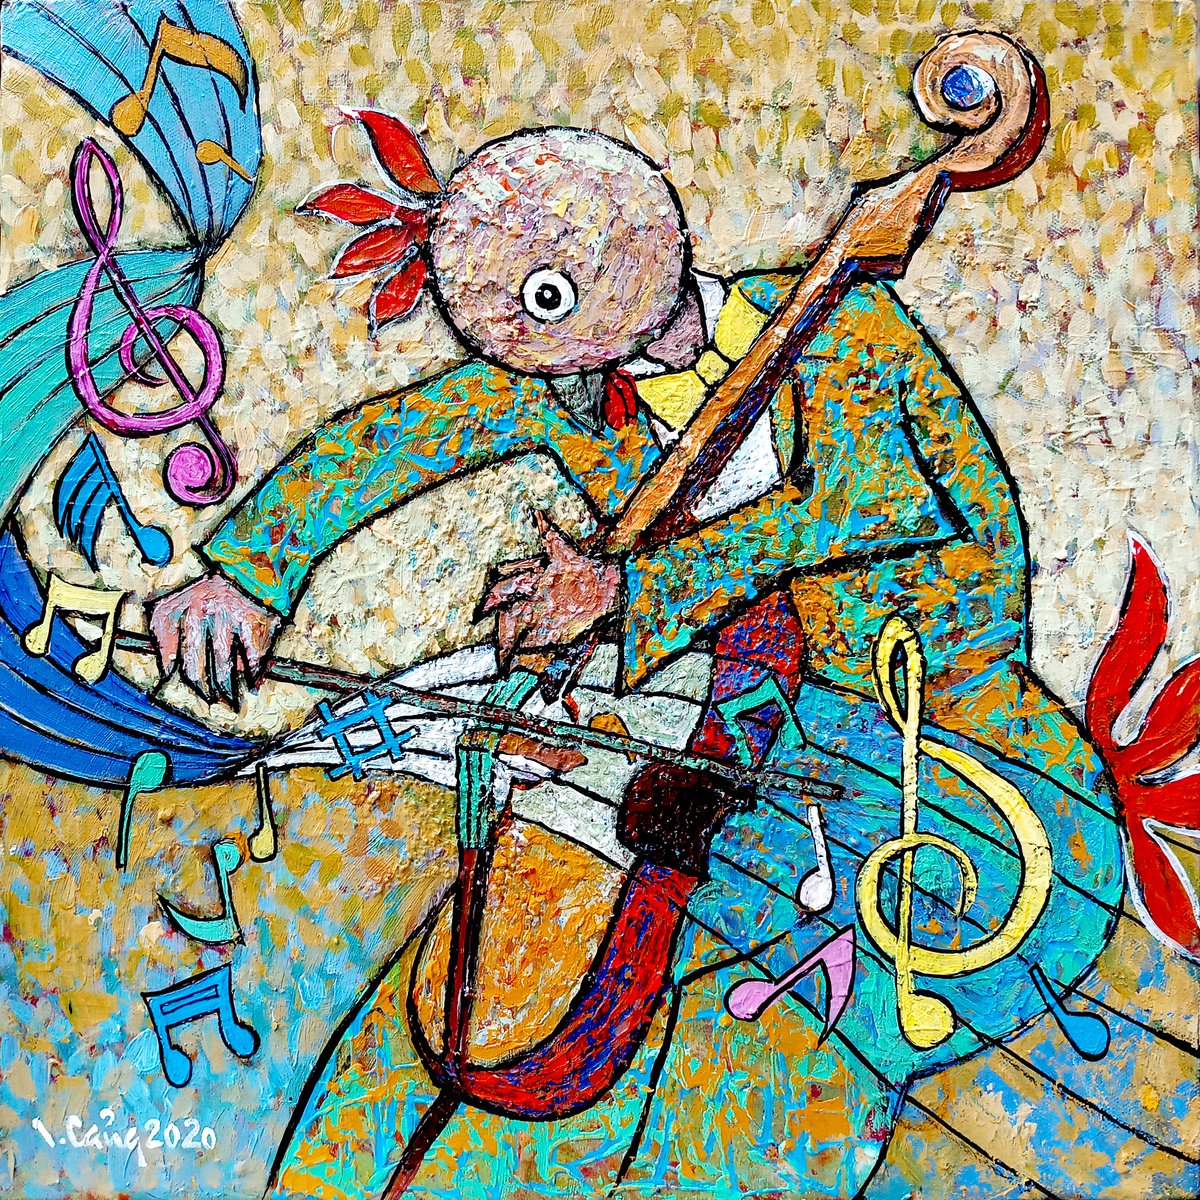 Cellist 3 by Cang Lam Van